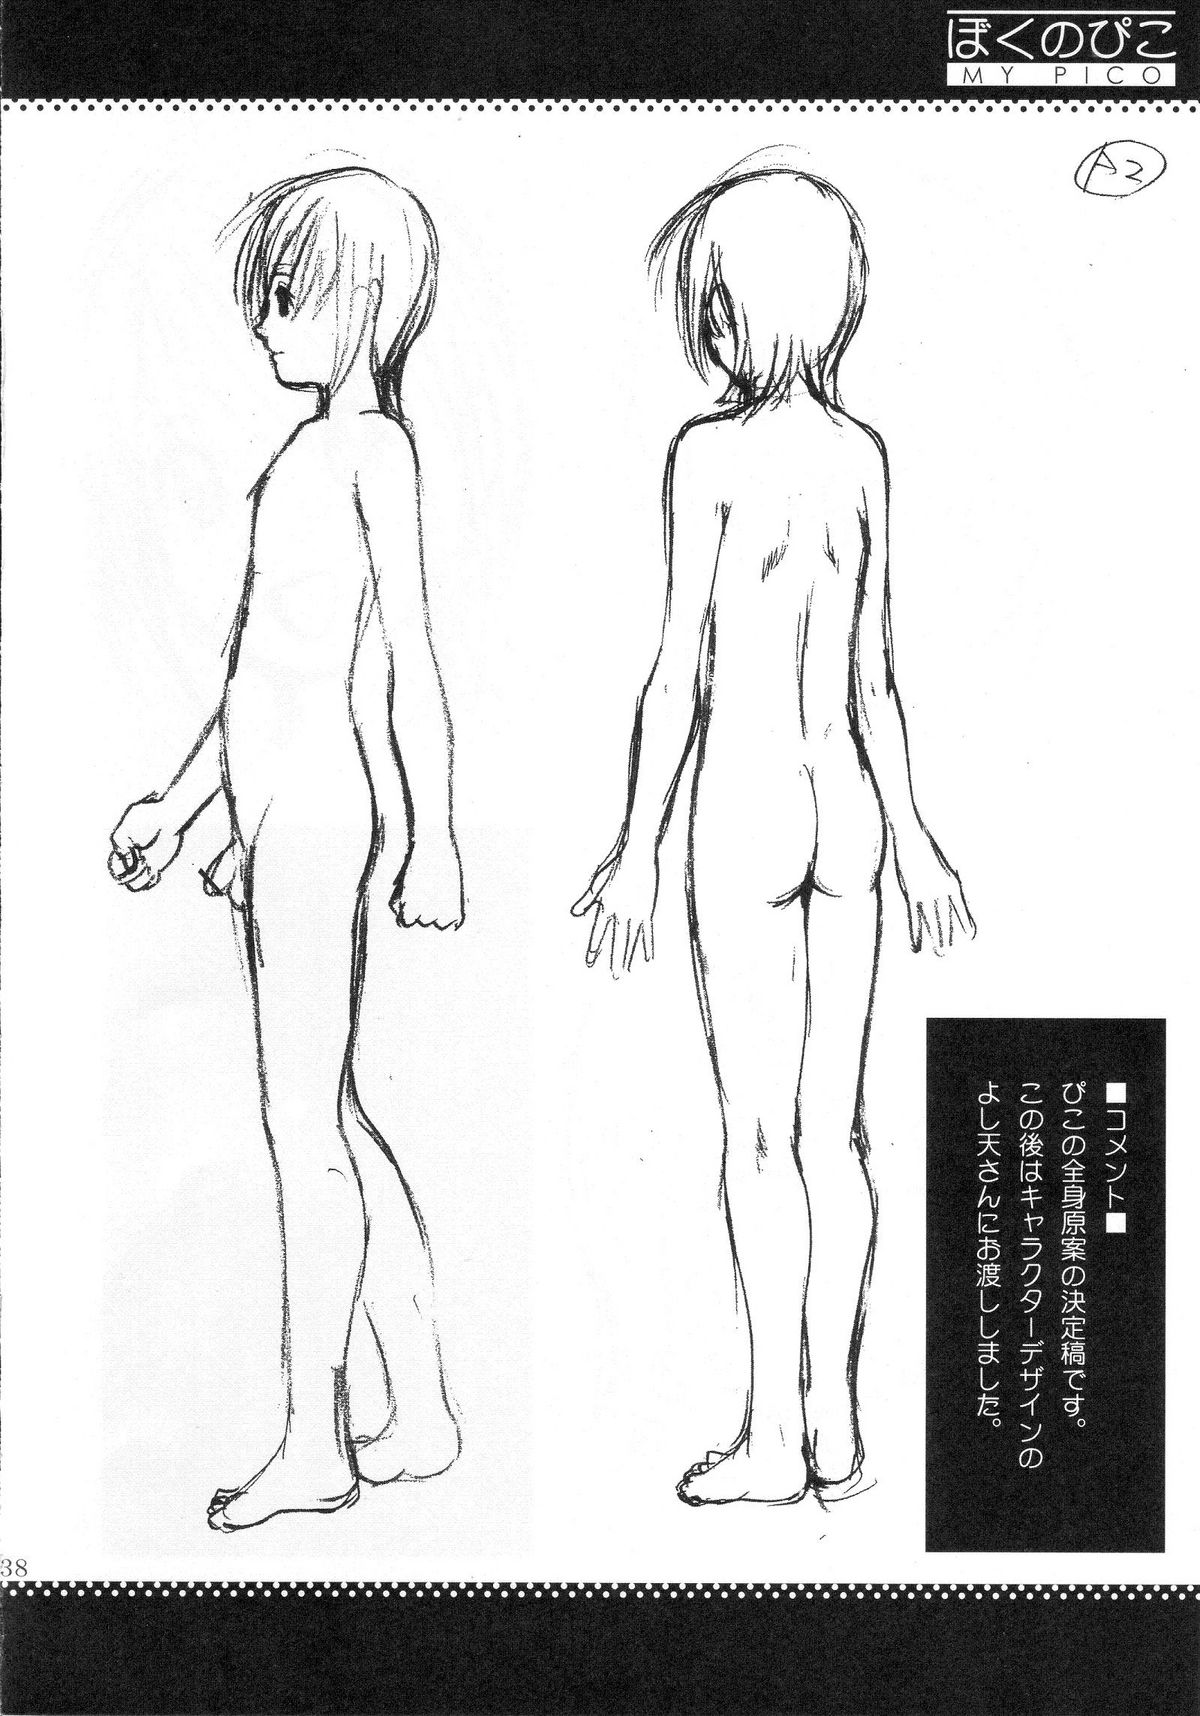 (COMIC1) [Saigado] Boku no Pico Comic + Koushiki Character Genanshuu (Boku no Pico) page 36 full